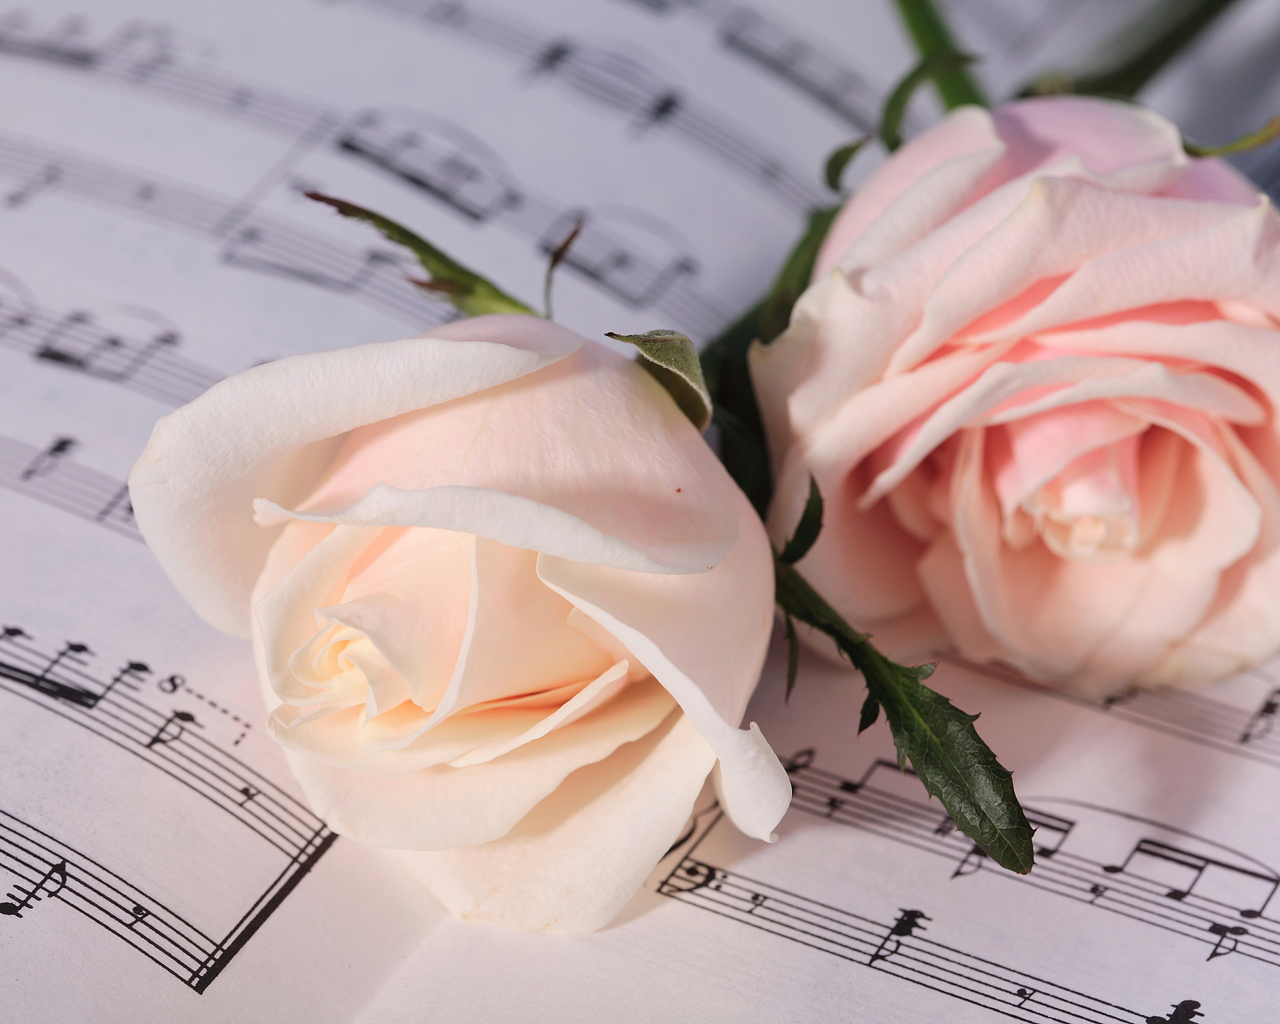 Две нежные розовые розы лежат на нотах 